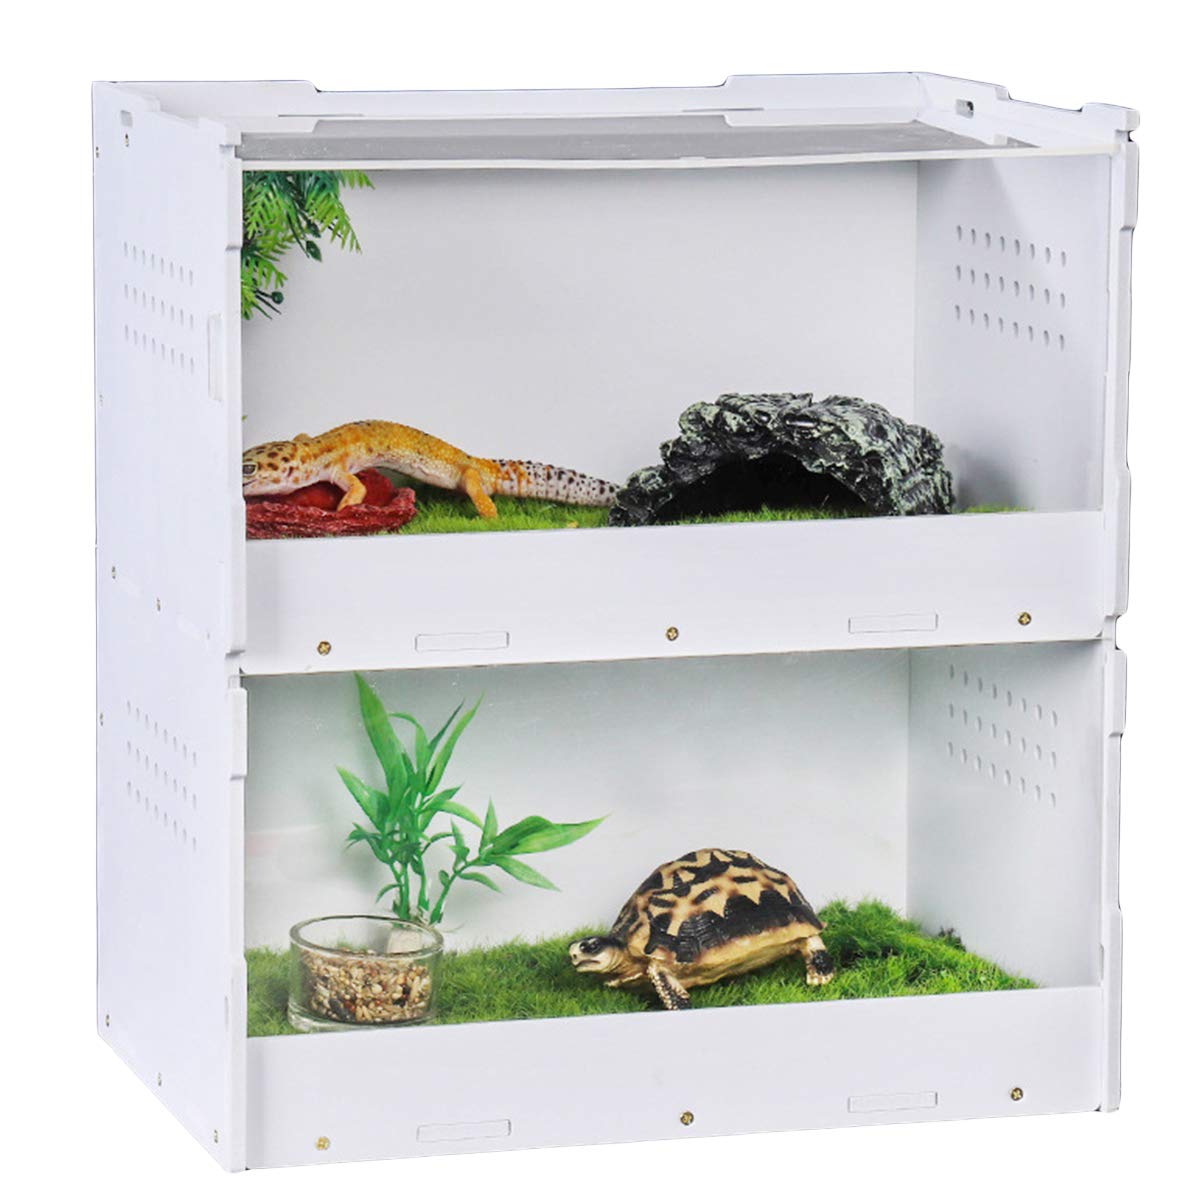 iFCOW Repitle Breeding Box, Double-Deck Micro Habitat Container Reptilienzuchtbox Acryl Reptilienbox für Eidechsen Geckos Kleine Zuchtbehälter